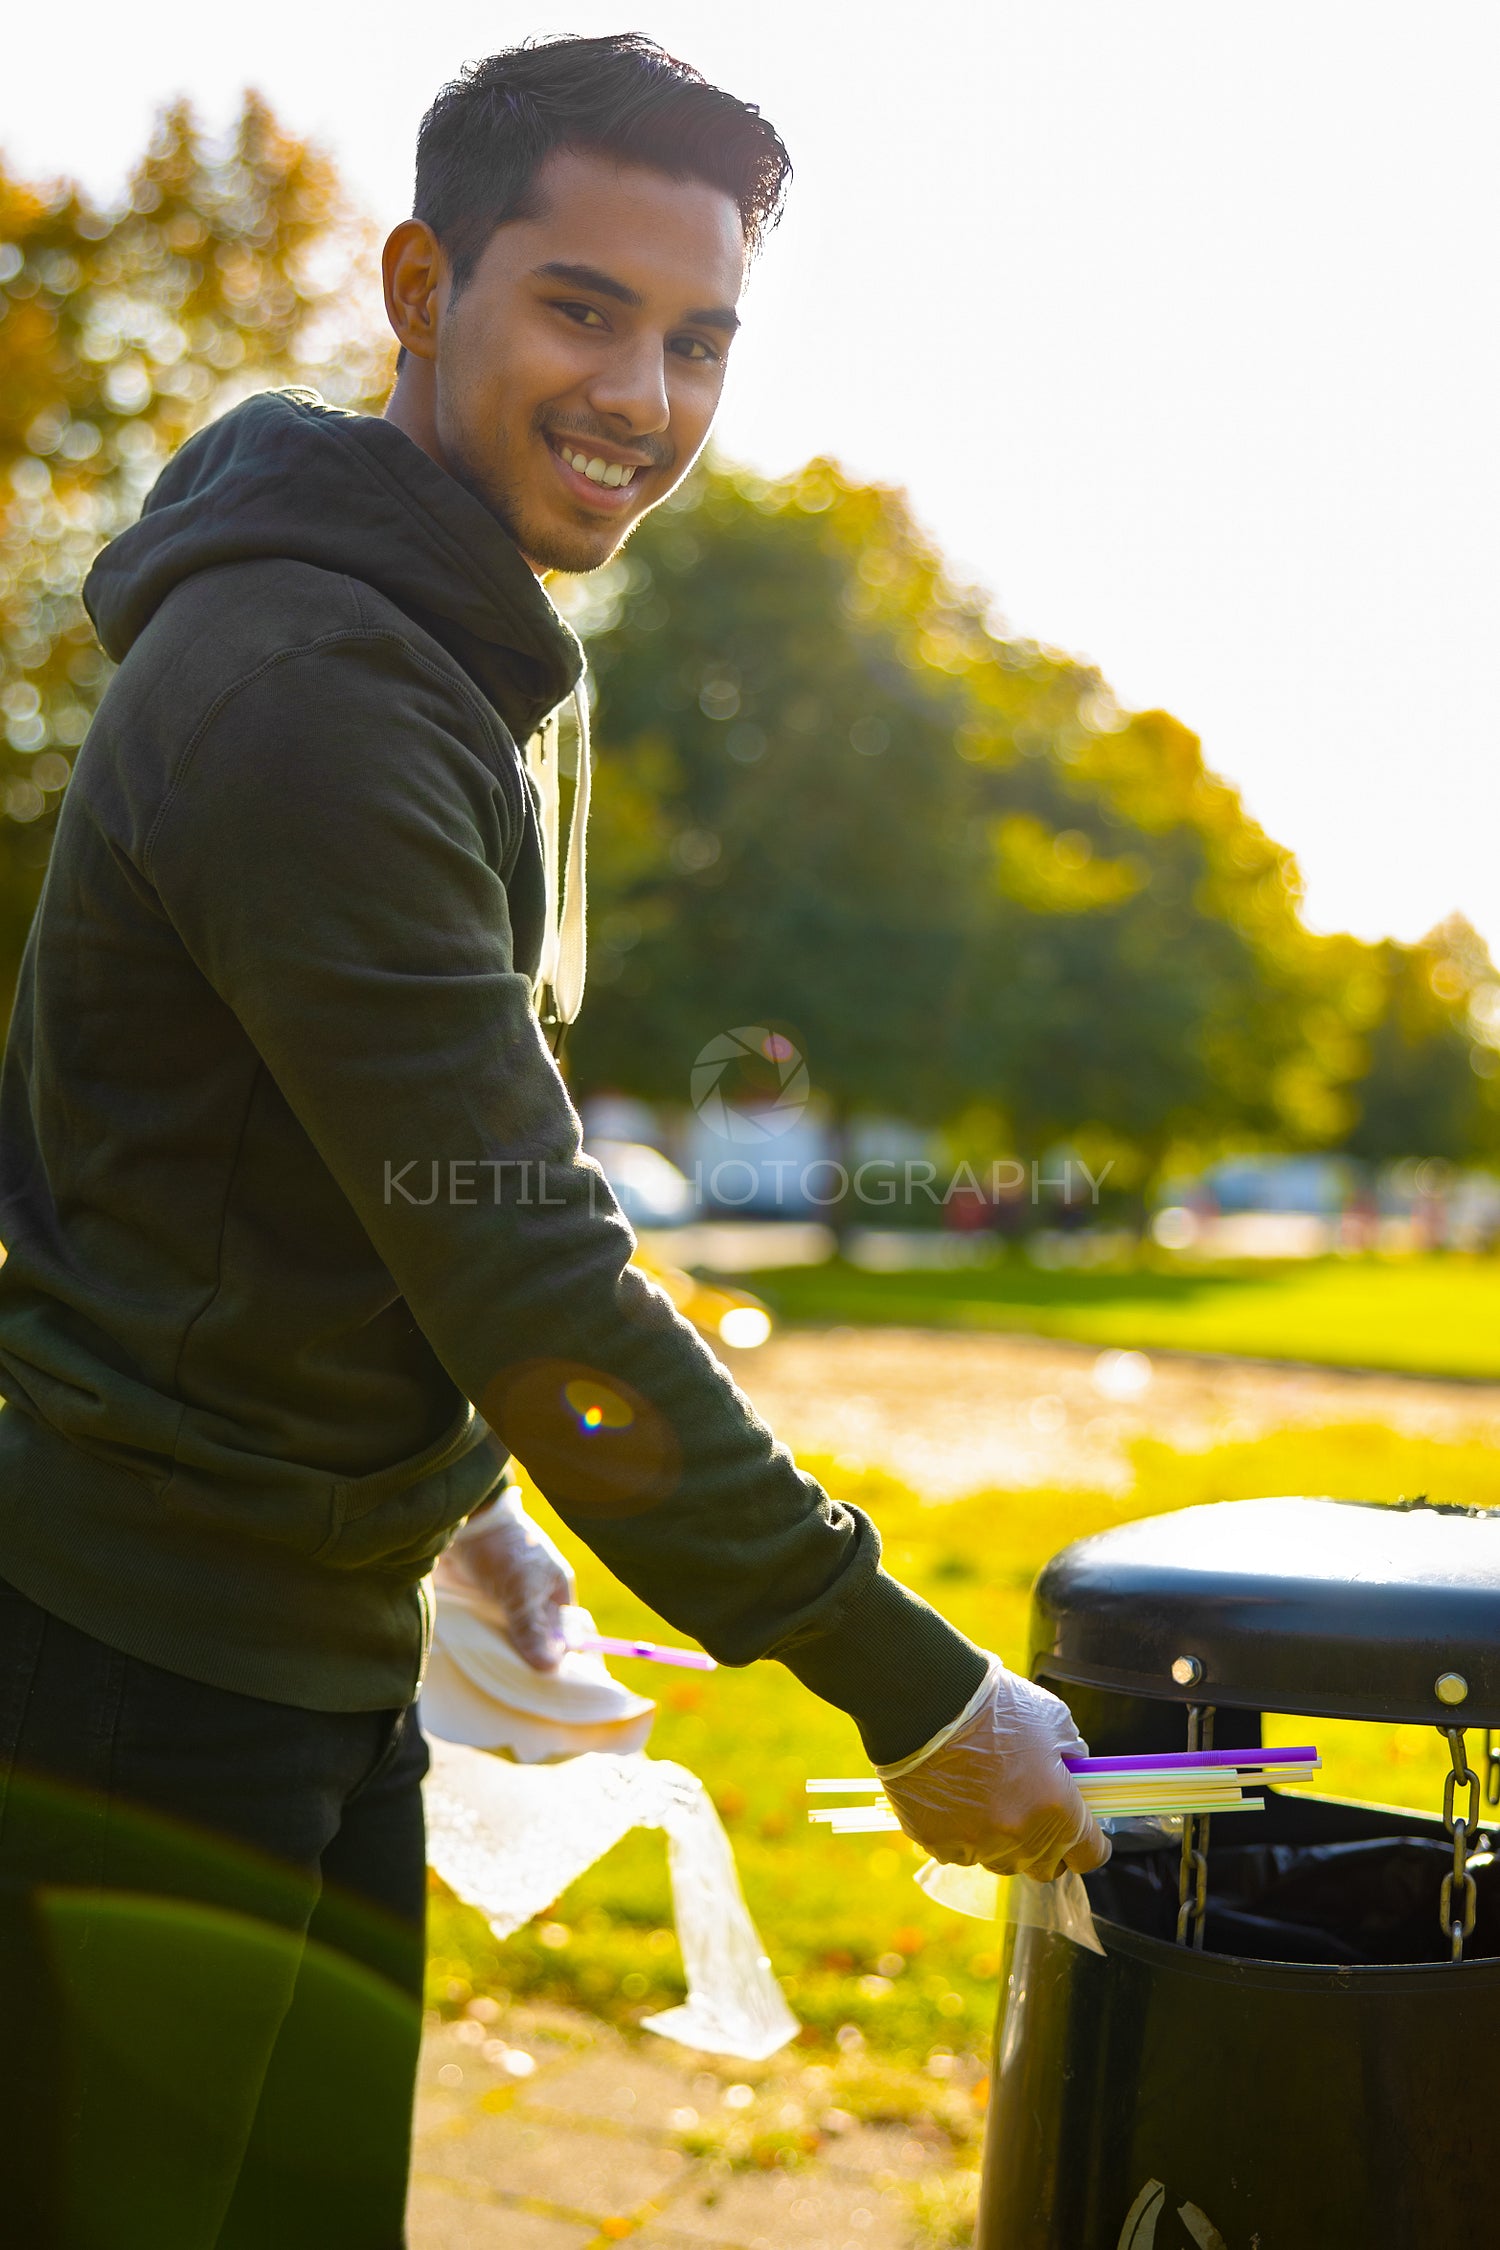 Smiling young man putting straws in garbage bin at park